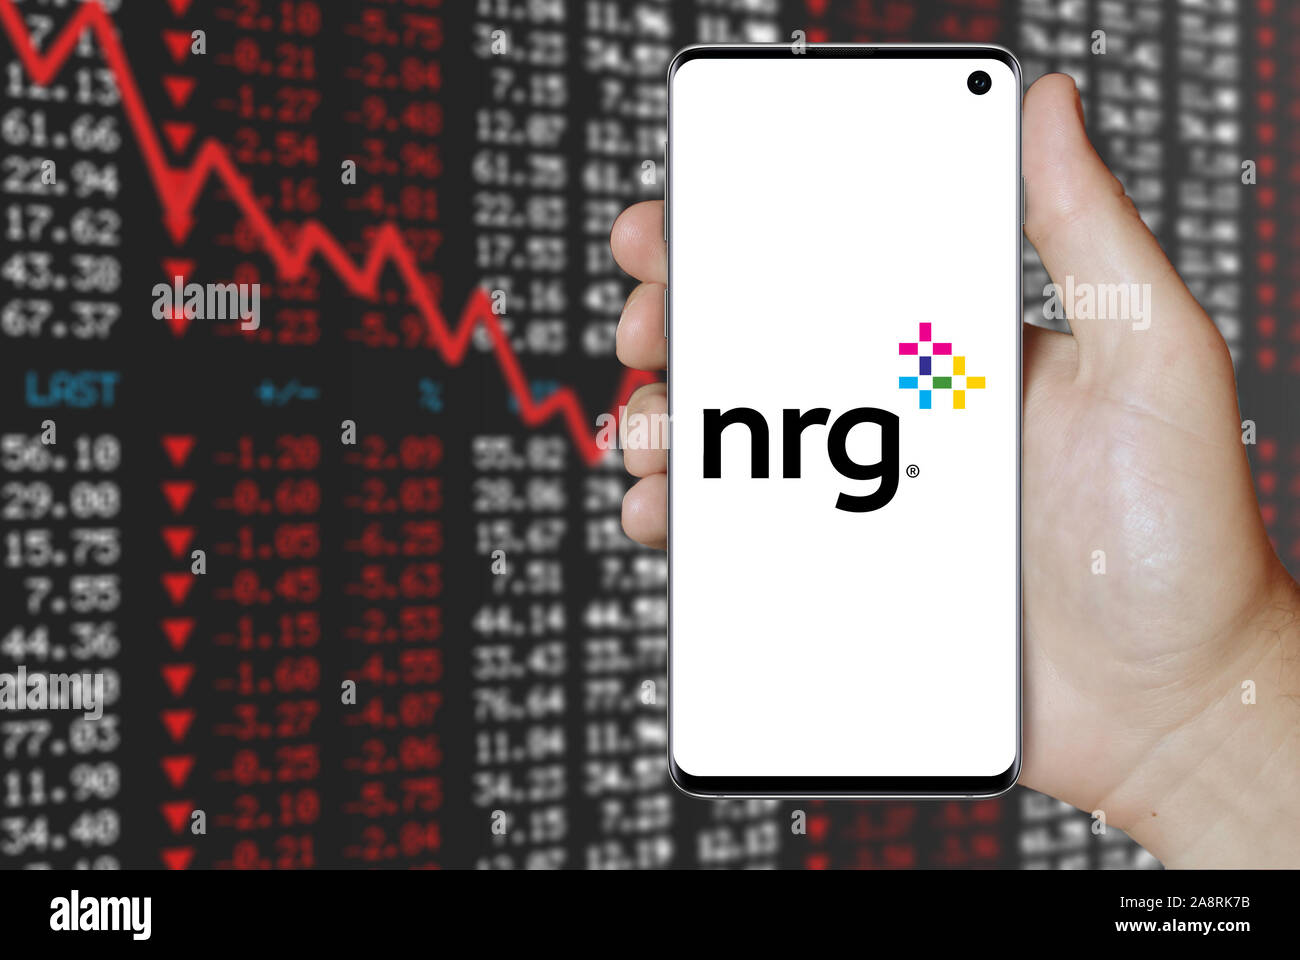 Logo of public company NRG Energy displayed on a smartphone. Negative stock market background. Credit: PIXDUCE Stock Photo